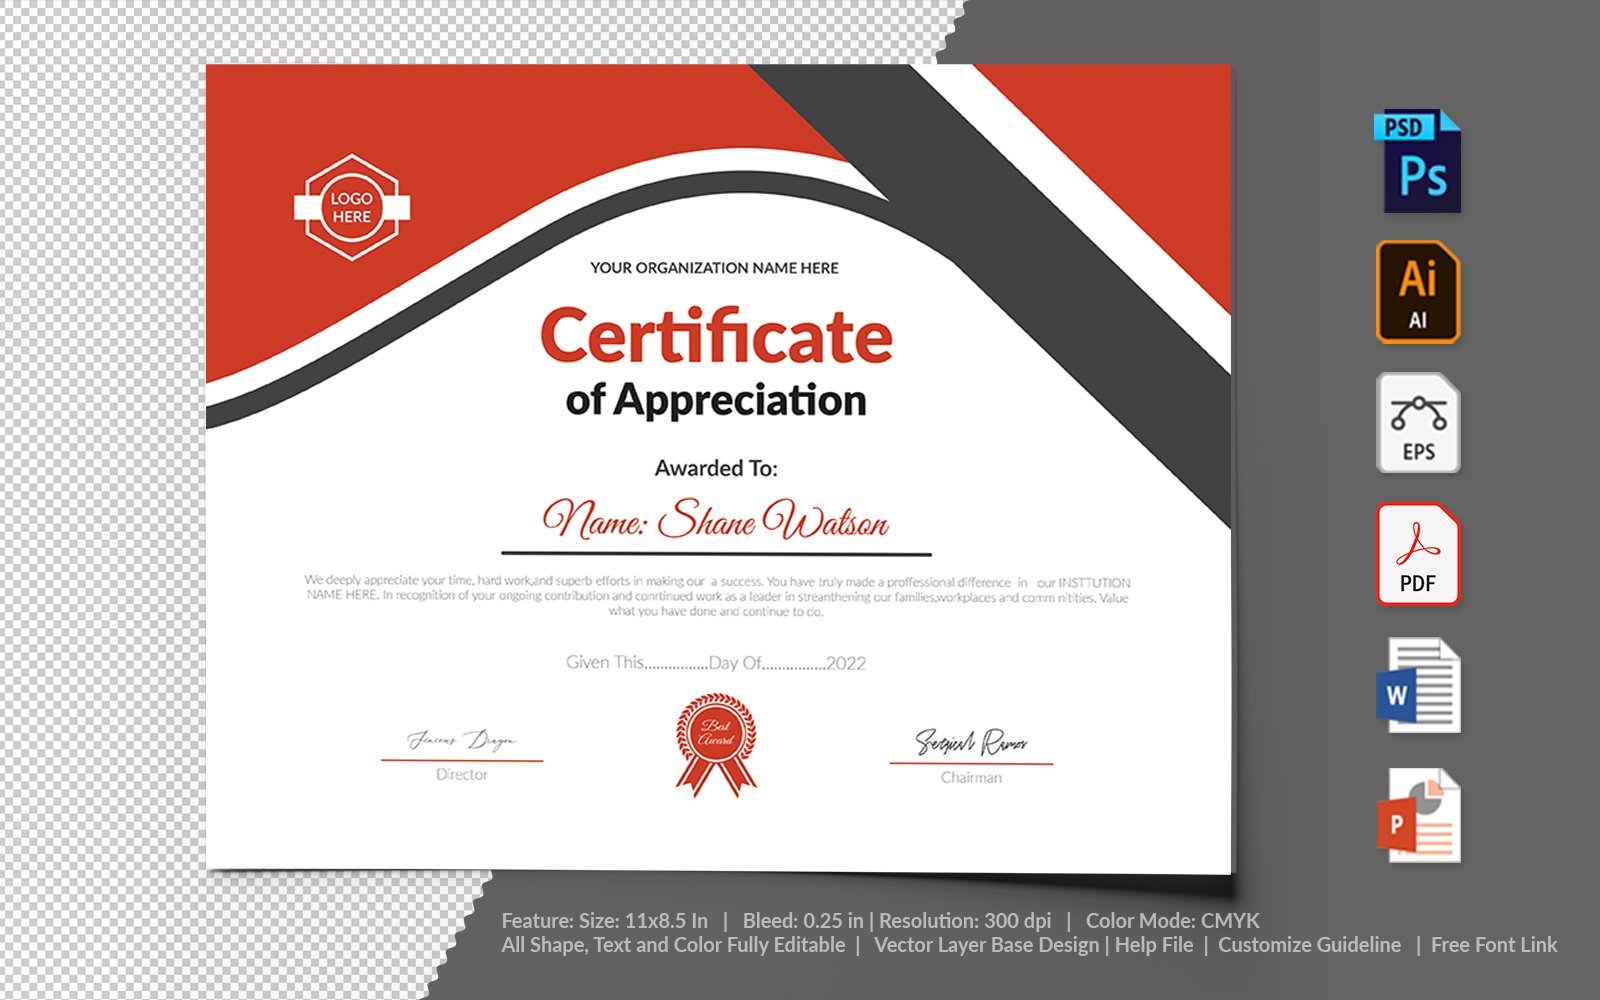 Kit Graphique #104737 Certificate Appreciation Divers Modles Web - Logo template Preview